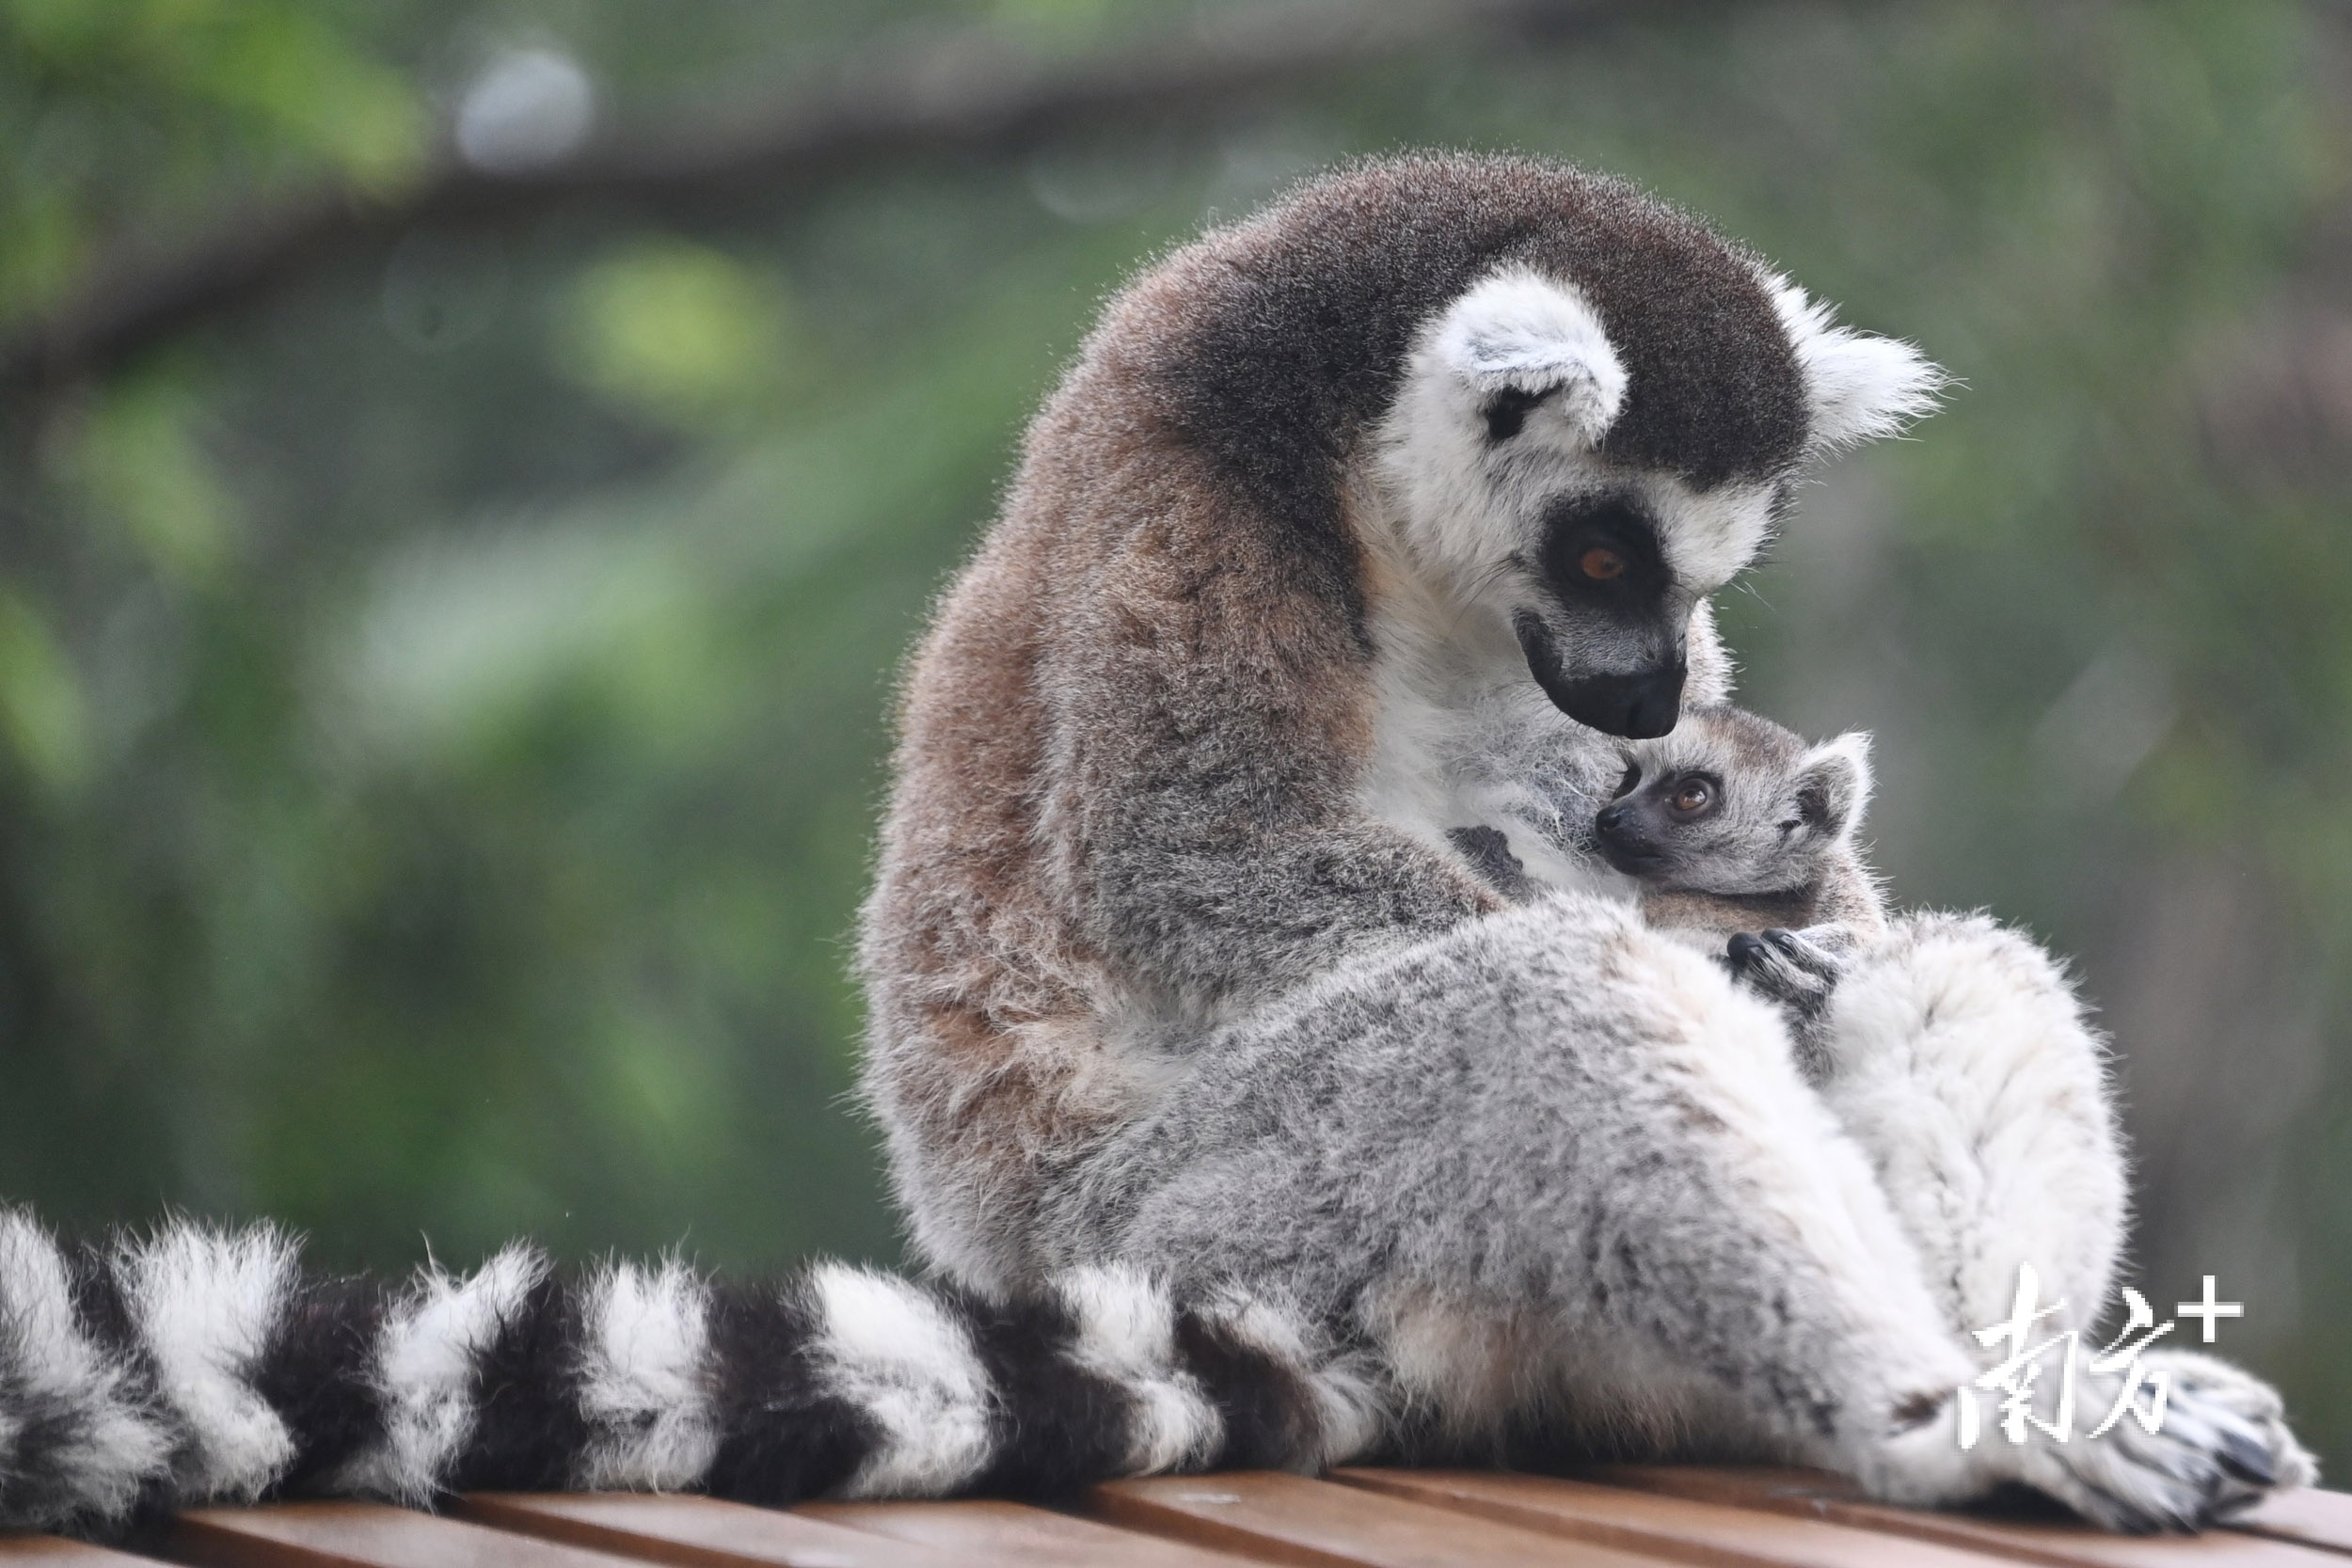 环尾狐猴妈妈对宝宝呵护备至。 